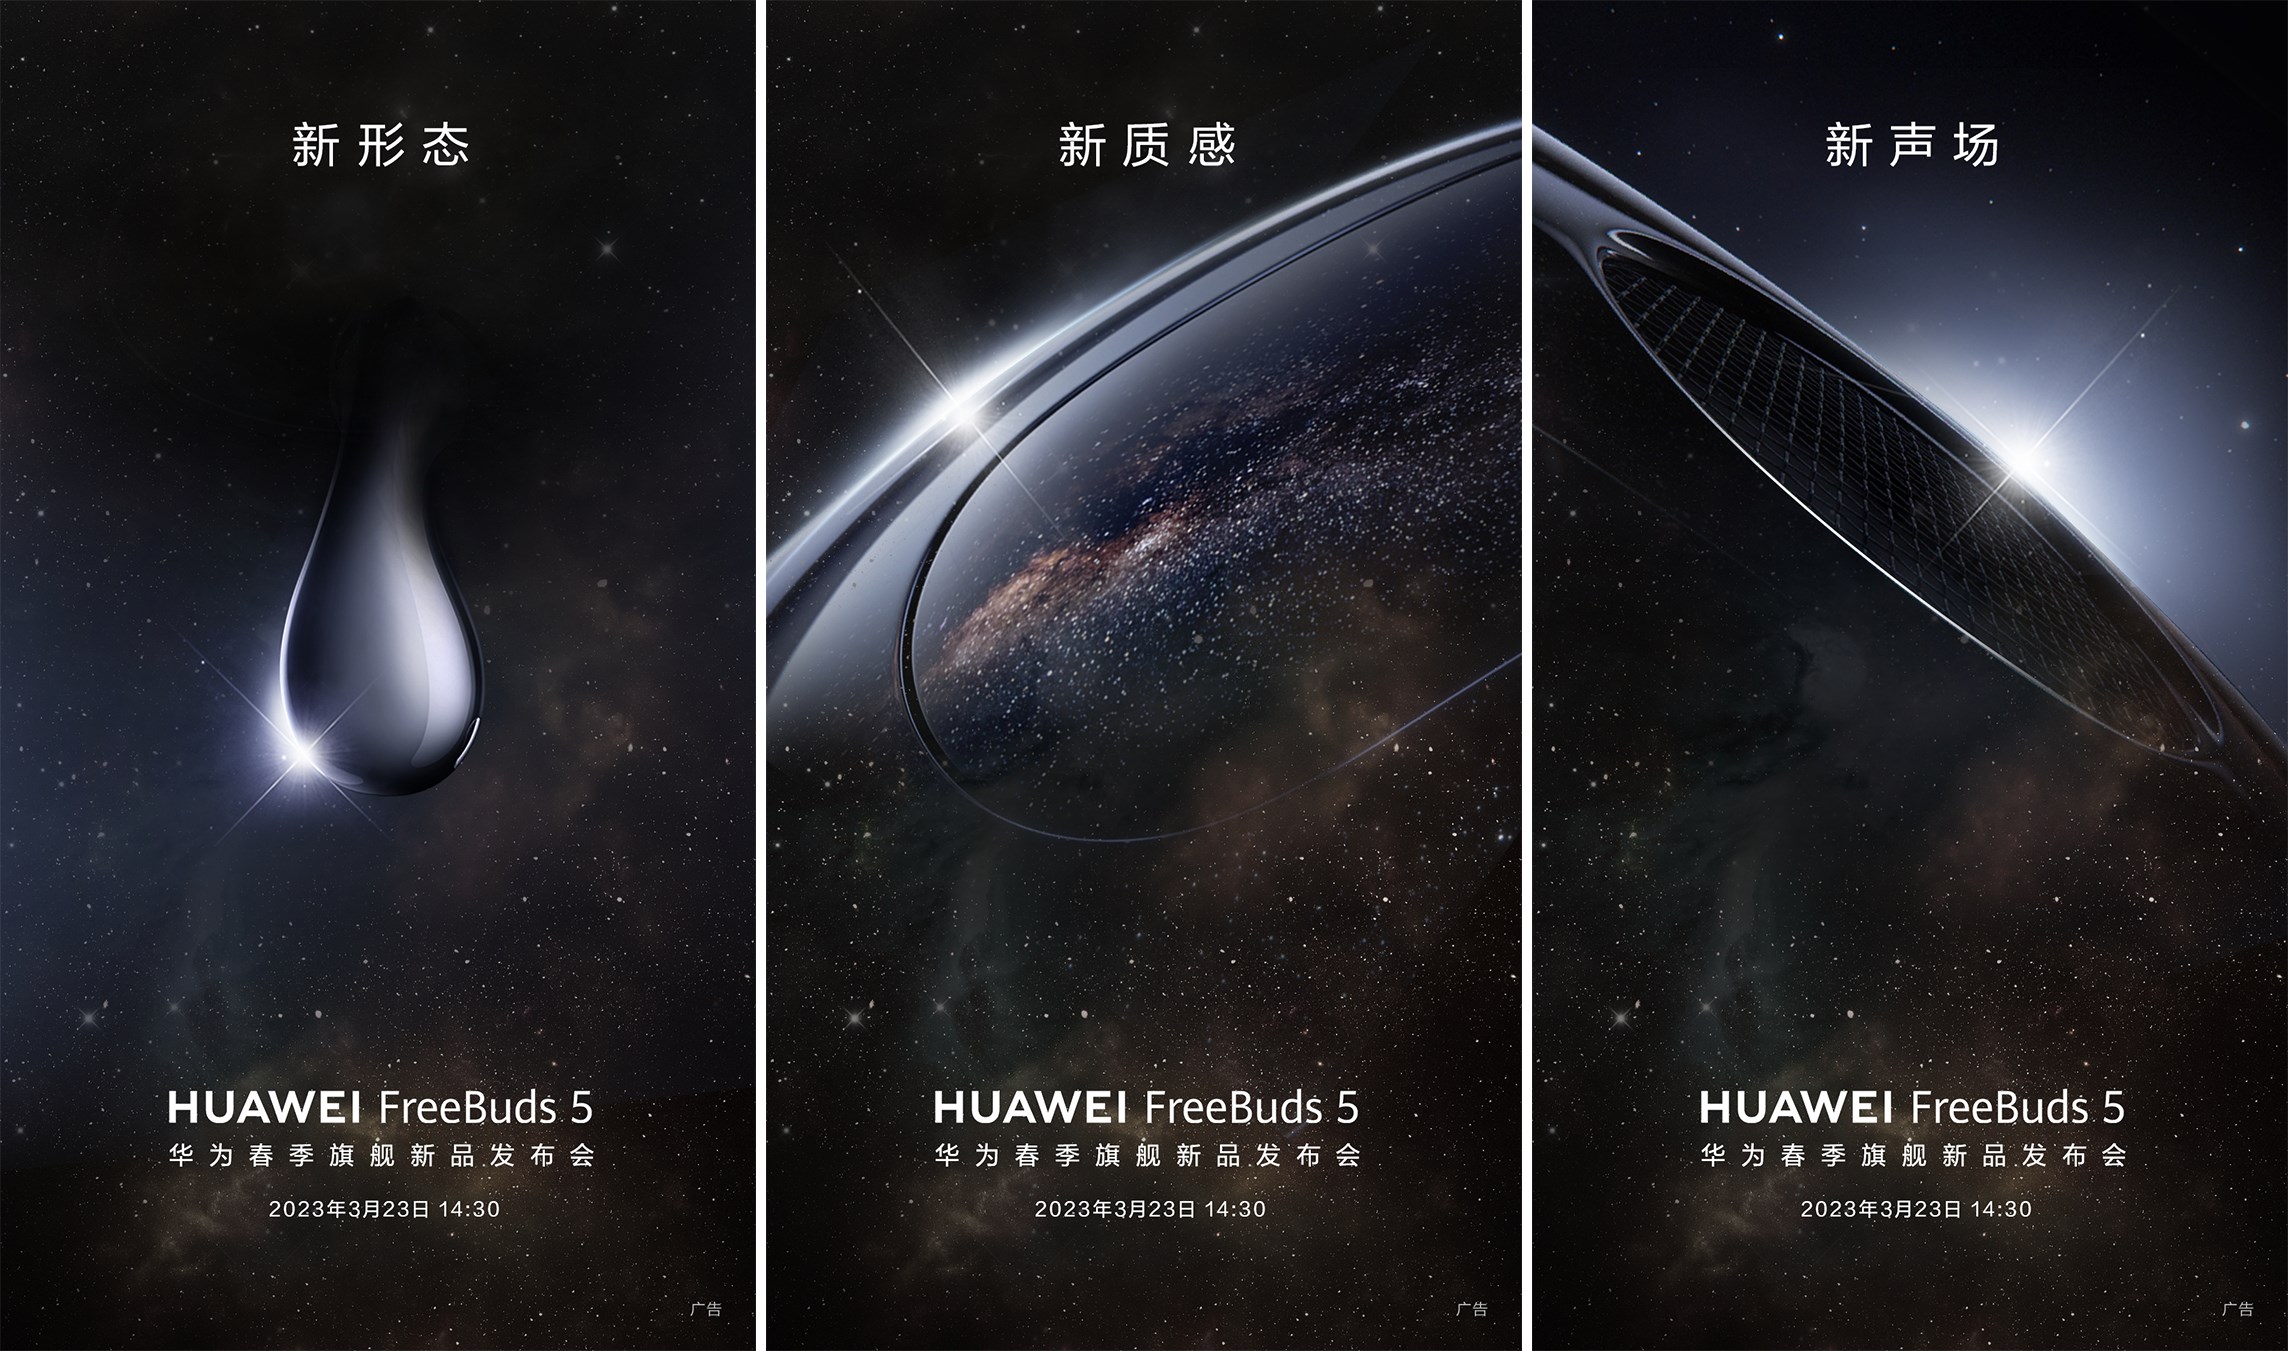 Huawei FreeBuds 5 yepyeni tasarımla geliyor: İşte görüntüsü